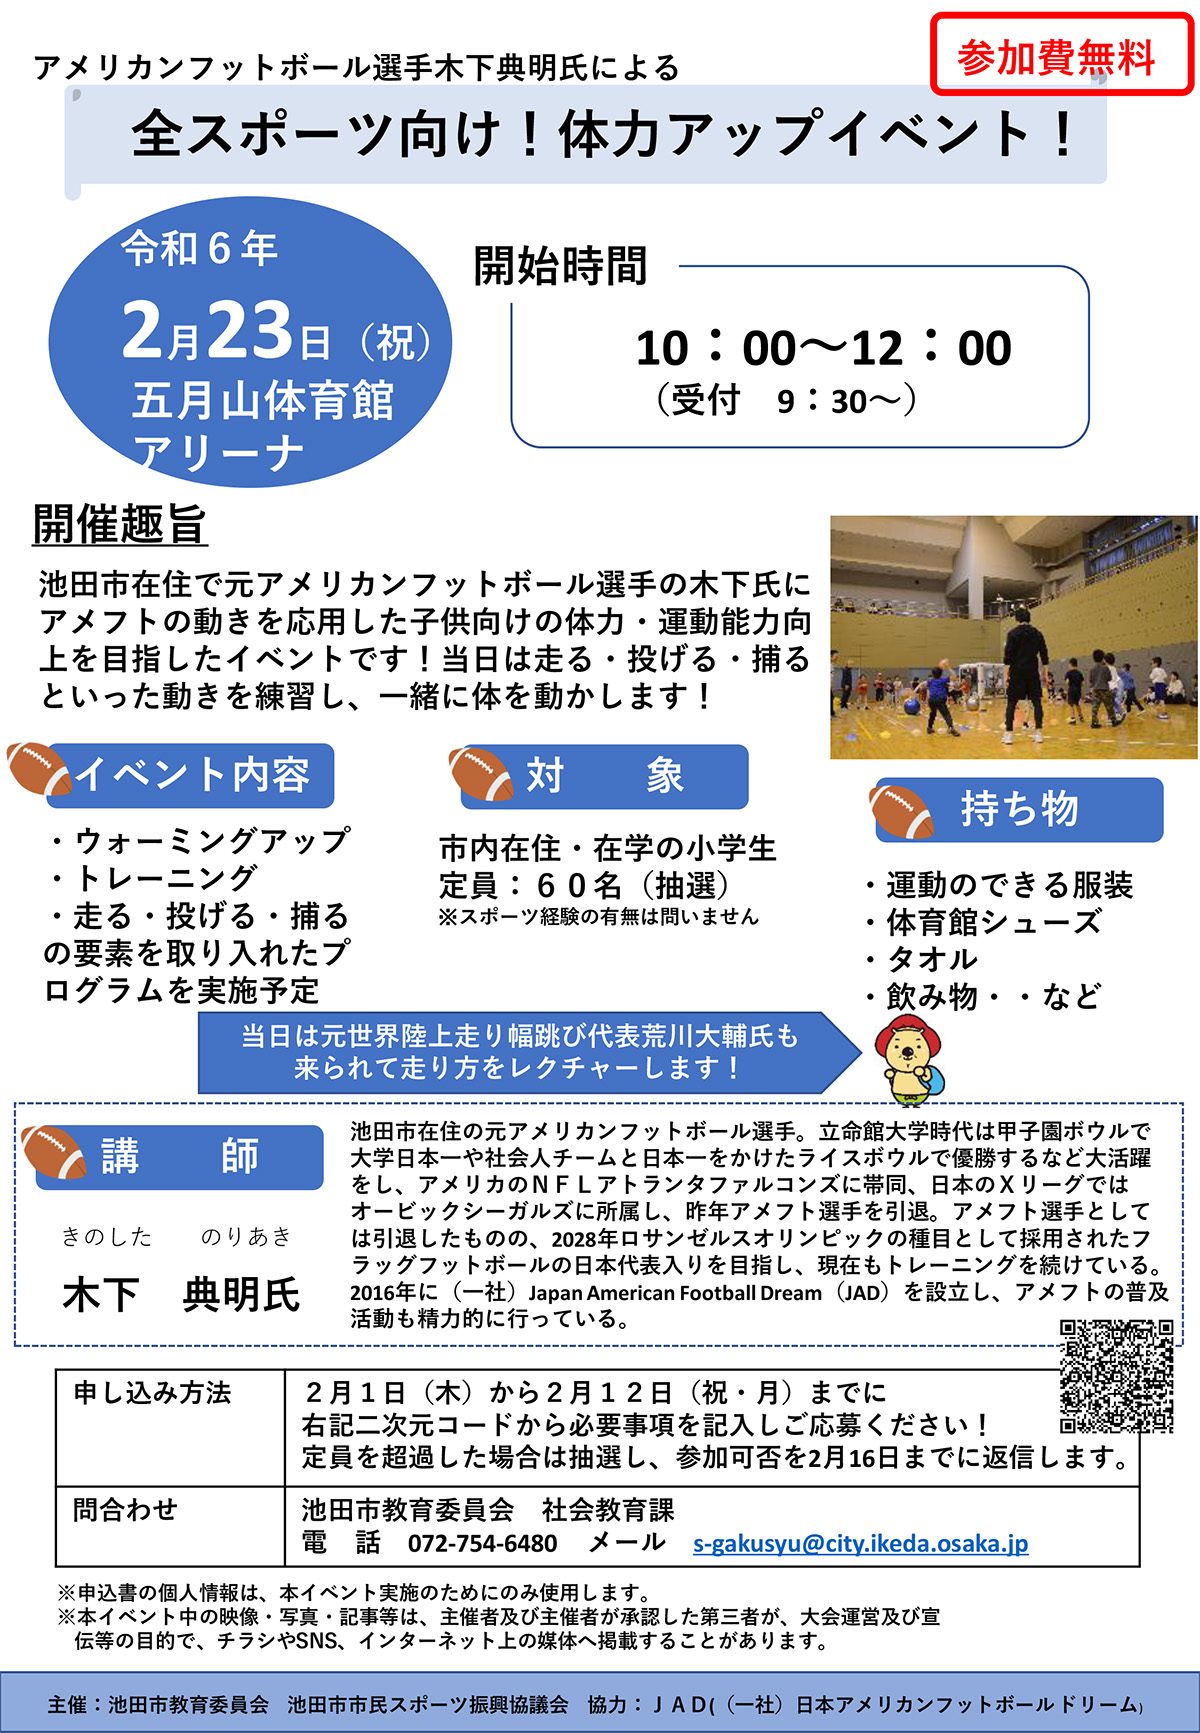 【2月1日受付開始】元アメフト選手木下さんによる体力アップイベント